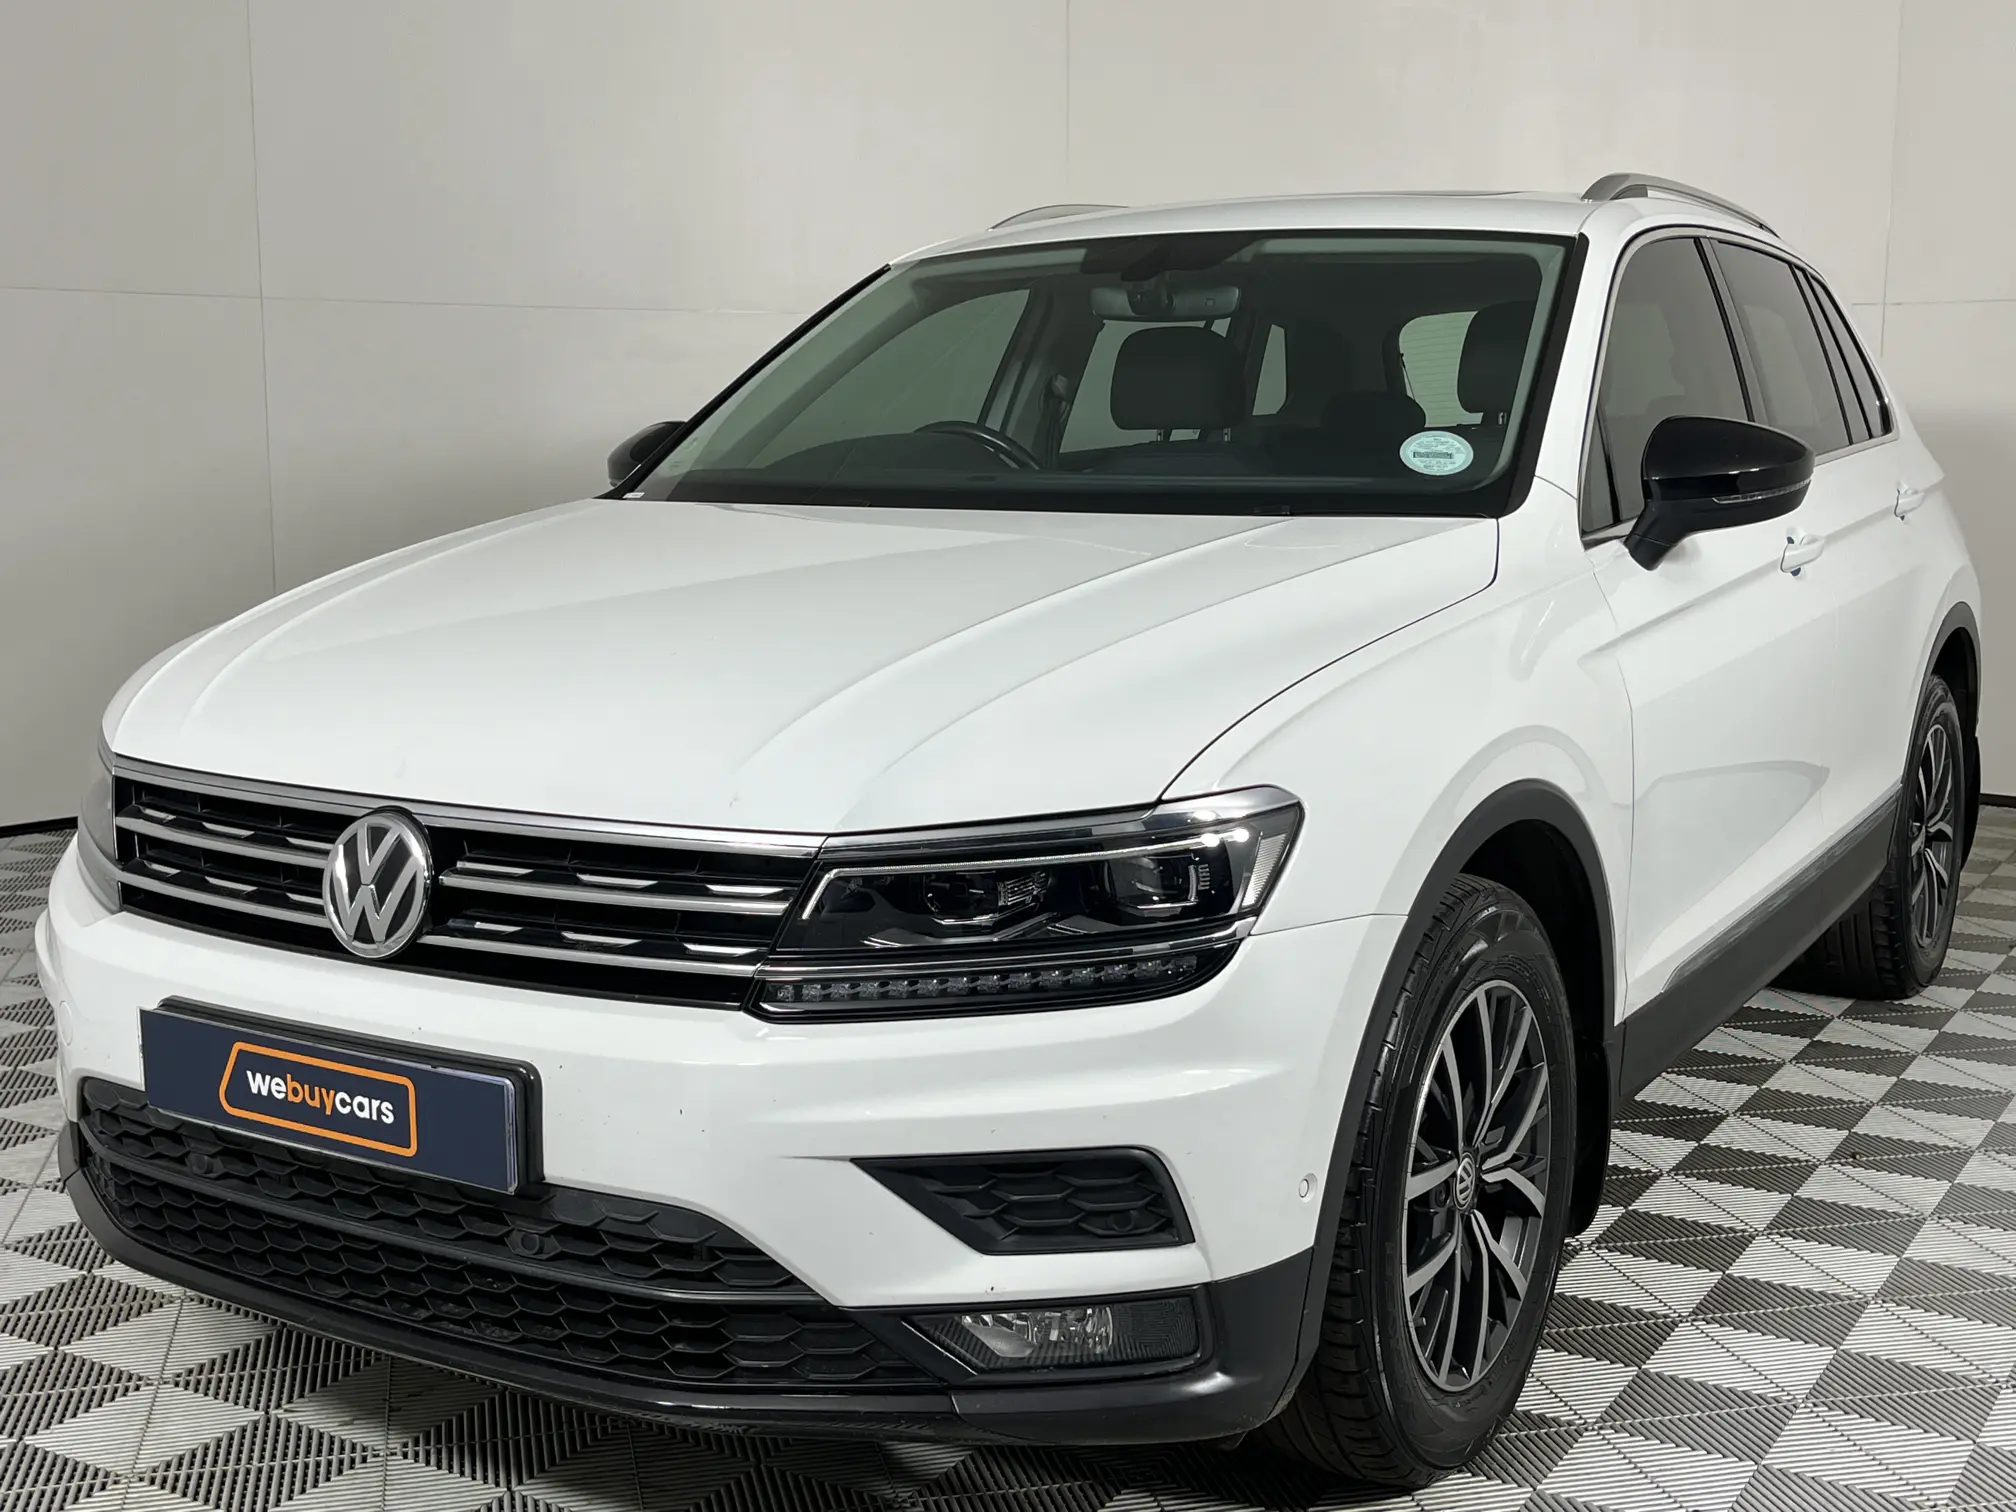 2018 Volkswagen Tiguan 2.0 TDI Comfortline